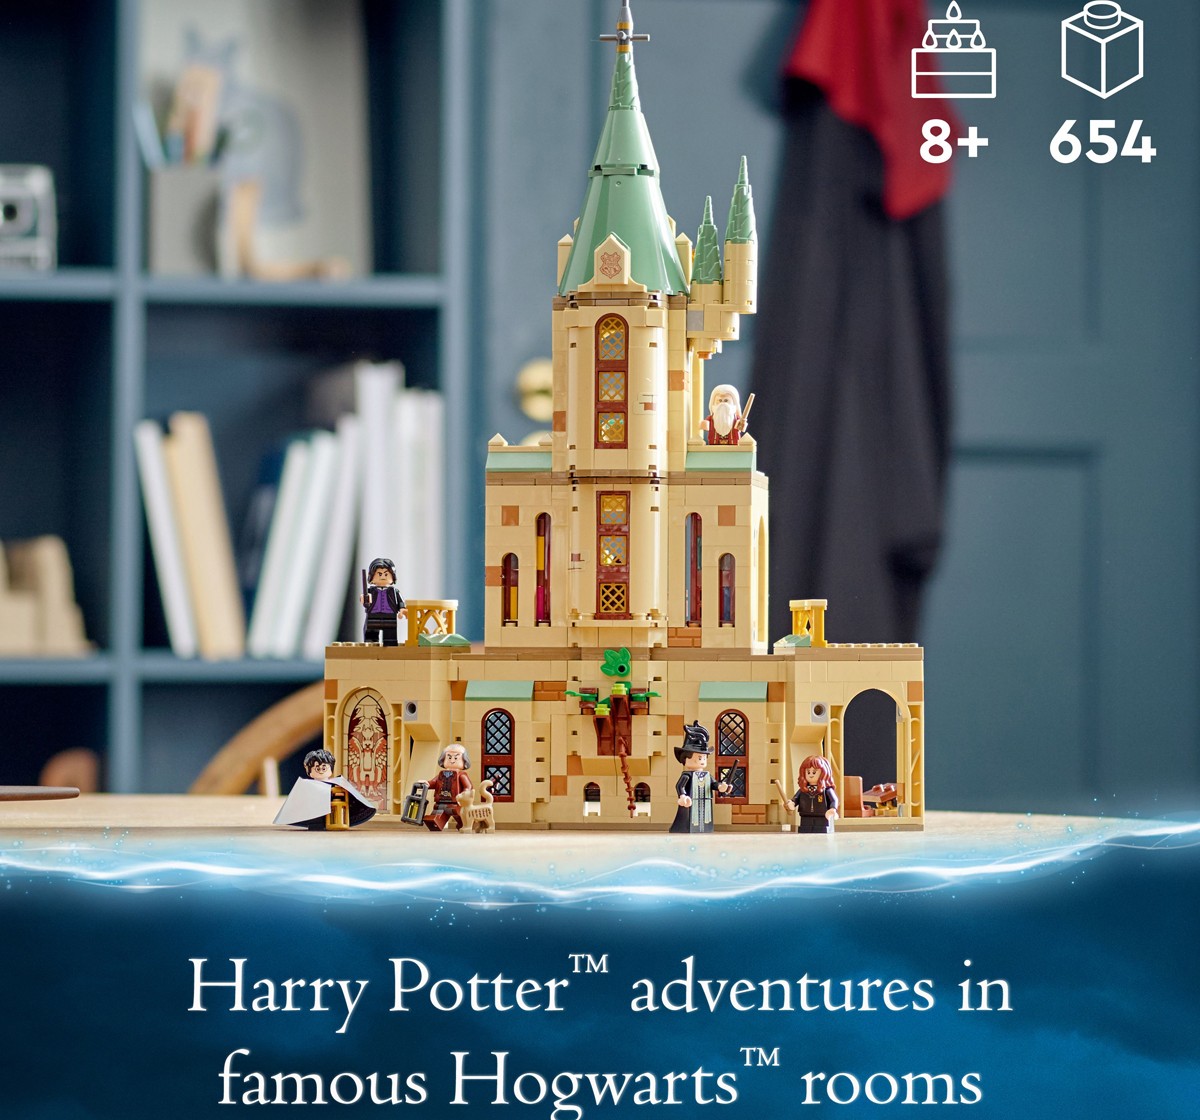 LEGO Harry Potter Hogwarts Dumbledore’s Office 76402 Building Kit 654 Pieces Multicolour 8Y+